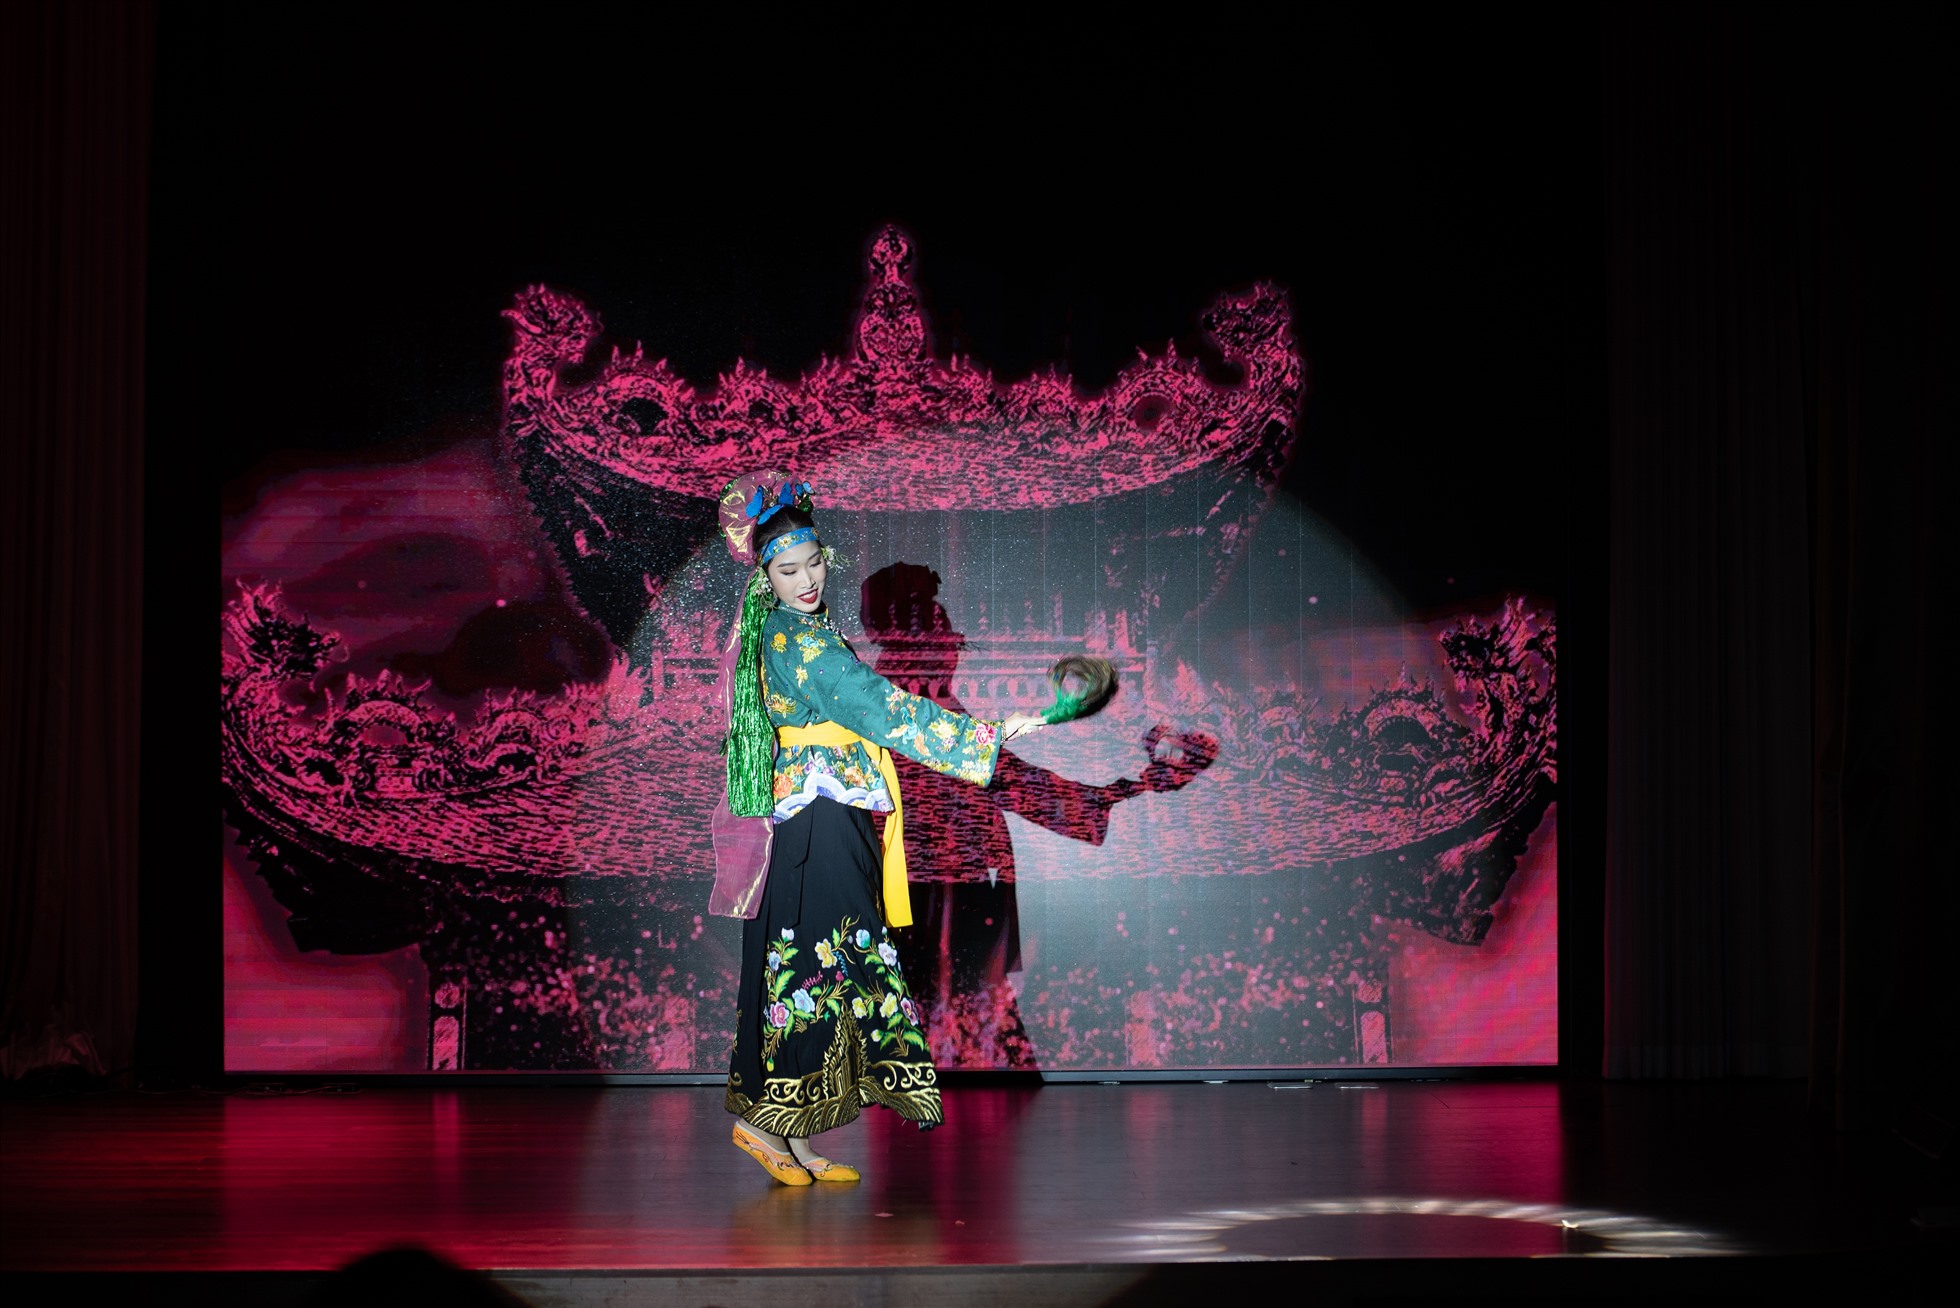 Màn trình diễn “Cô đôi thượng ngàn” được tái hiện hai lần trên sân khấu Người đẹp Tài năng của Hoa hậu Việt Nam 2022. Với thí sinh Vũ Hiền Phương, cô nàng vừa múa và tự tin thể hiện giọng hát mê hoặc, am hiểu về cách hát chầu văn.